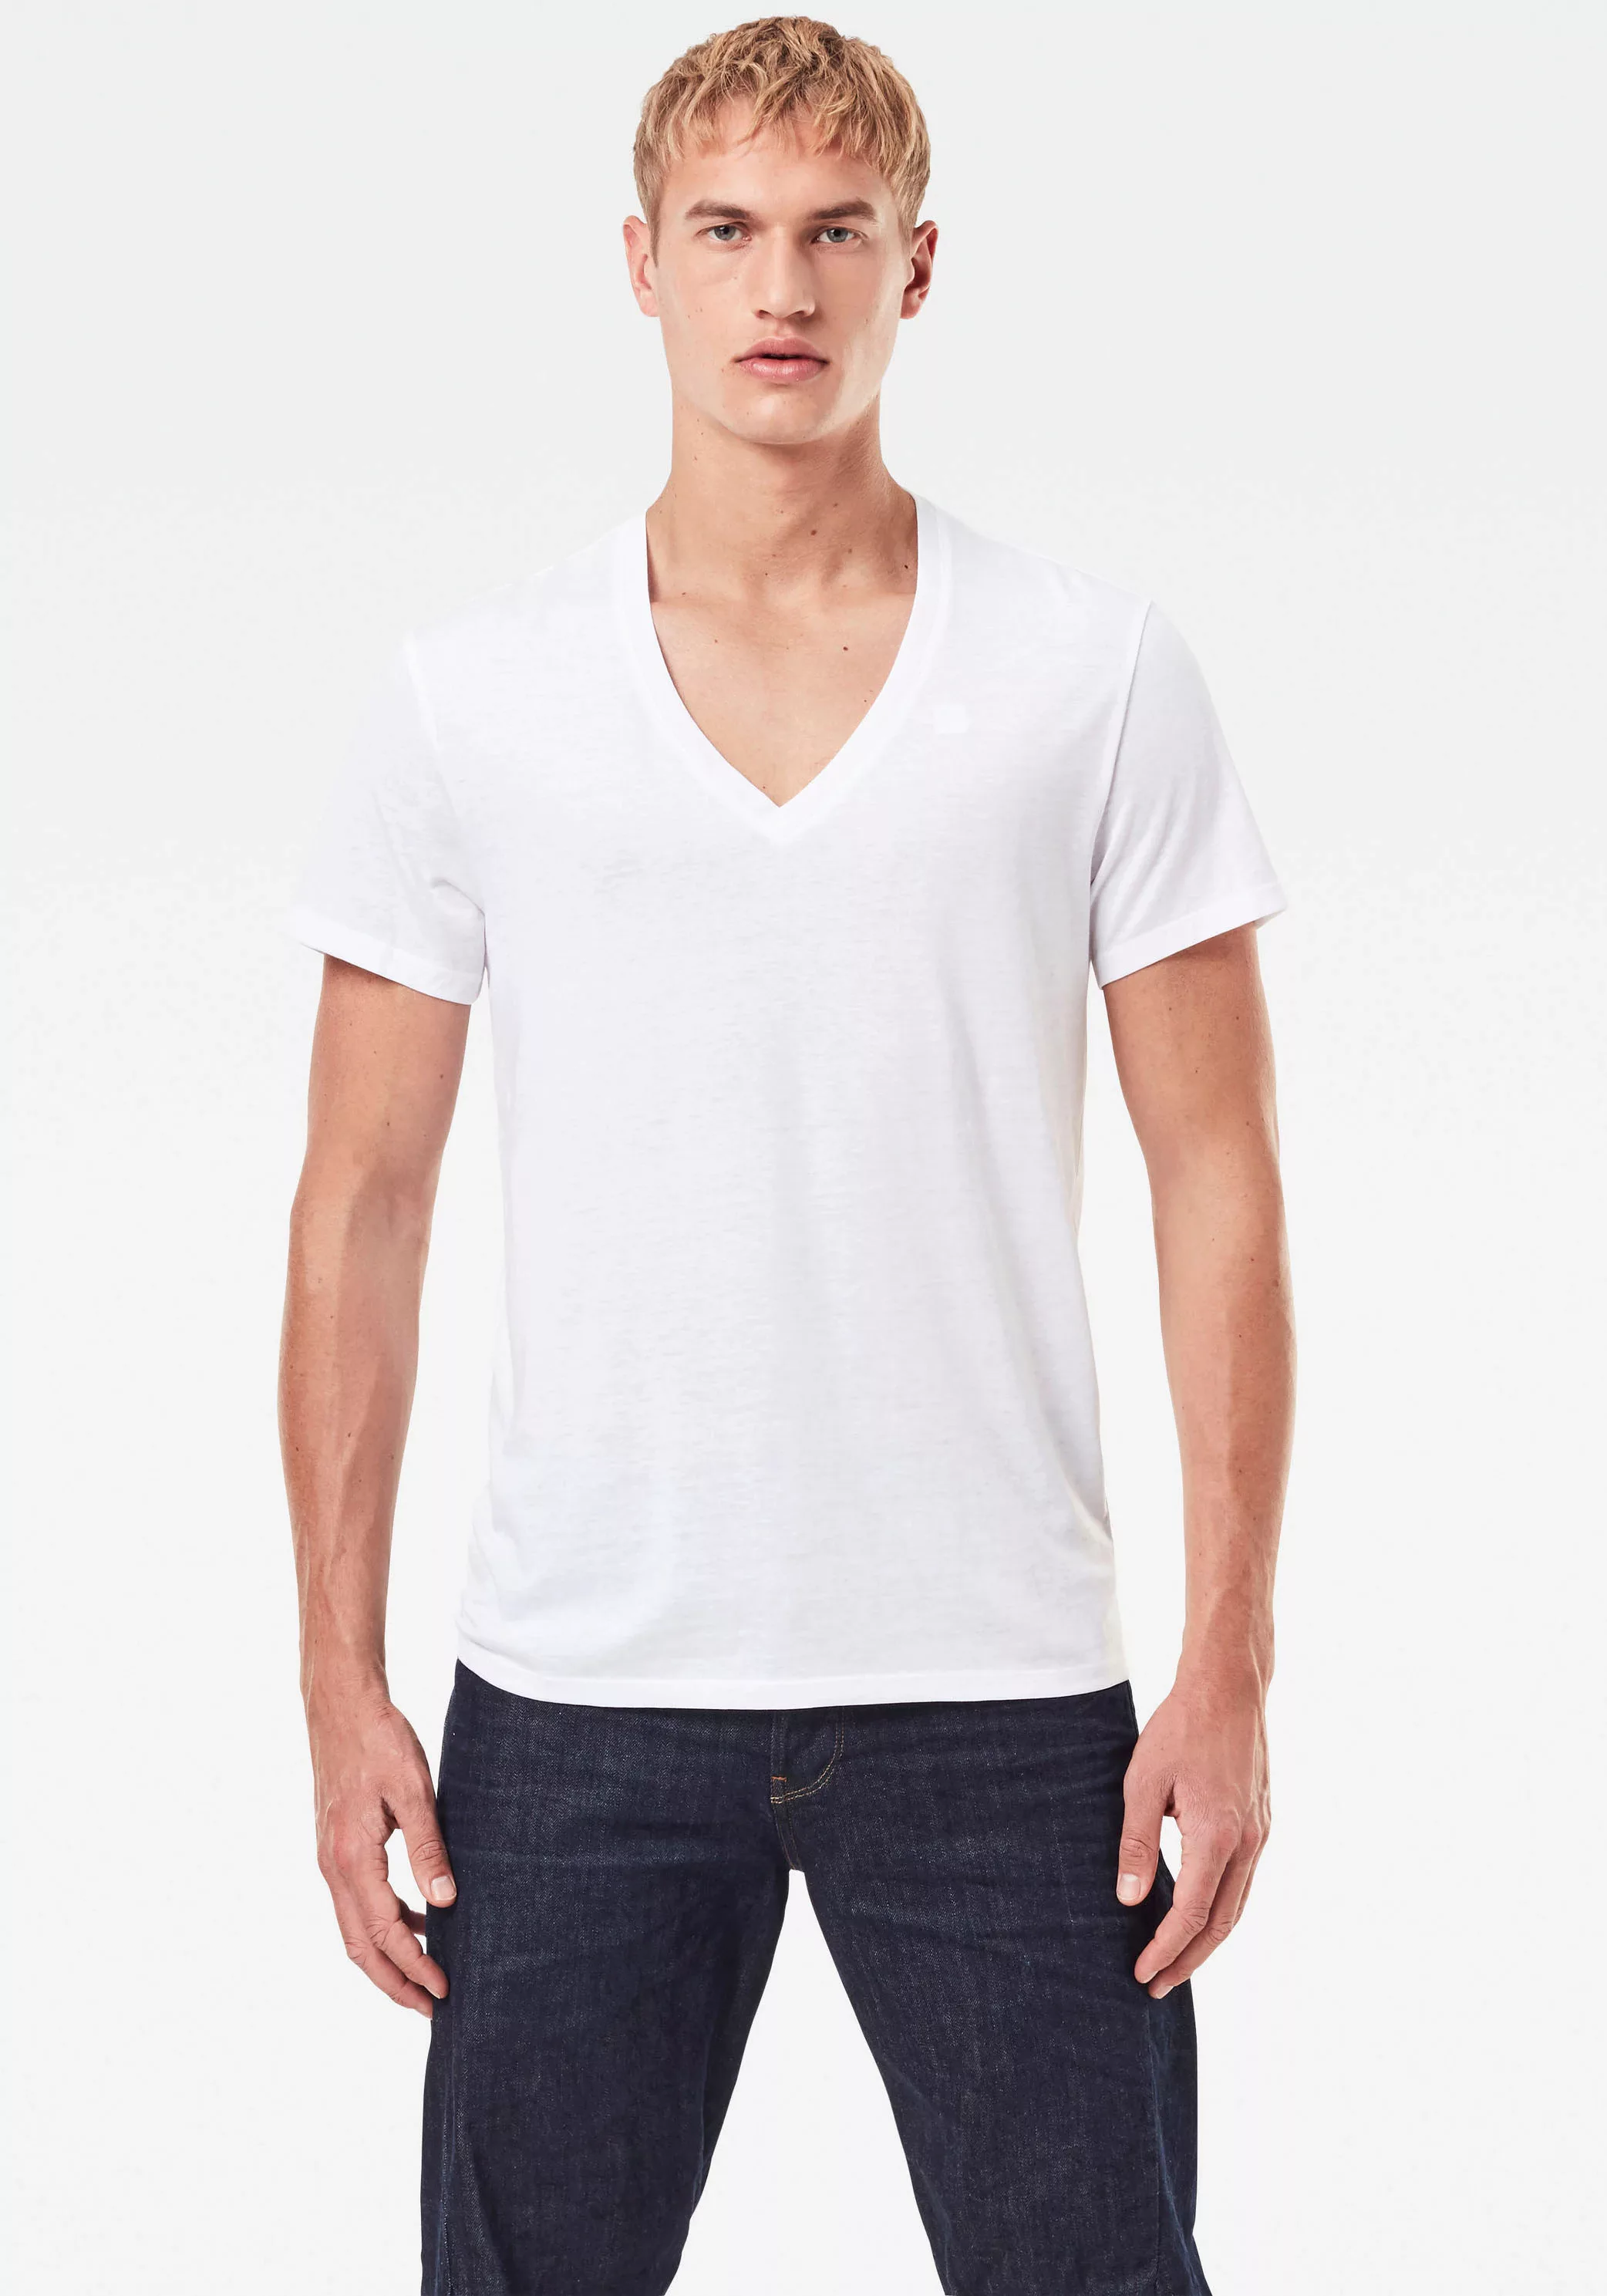 G-star Base Heather Ribbed V-neck Ny Jersey 2 Units Kurzarm T-shirt S White günstig online kaufen